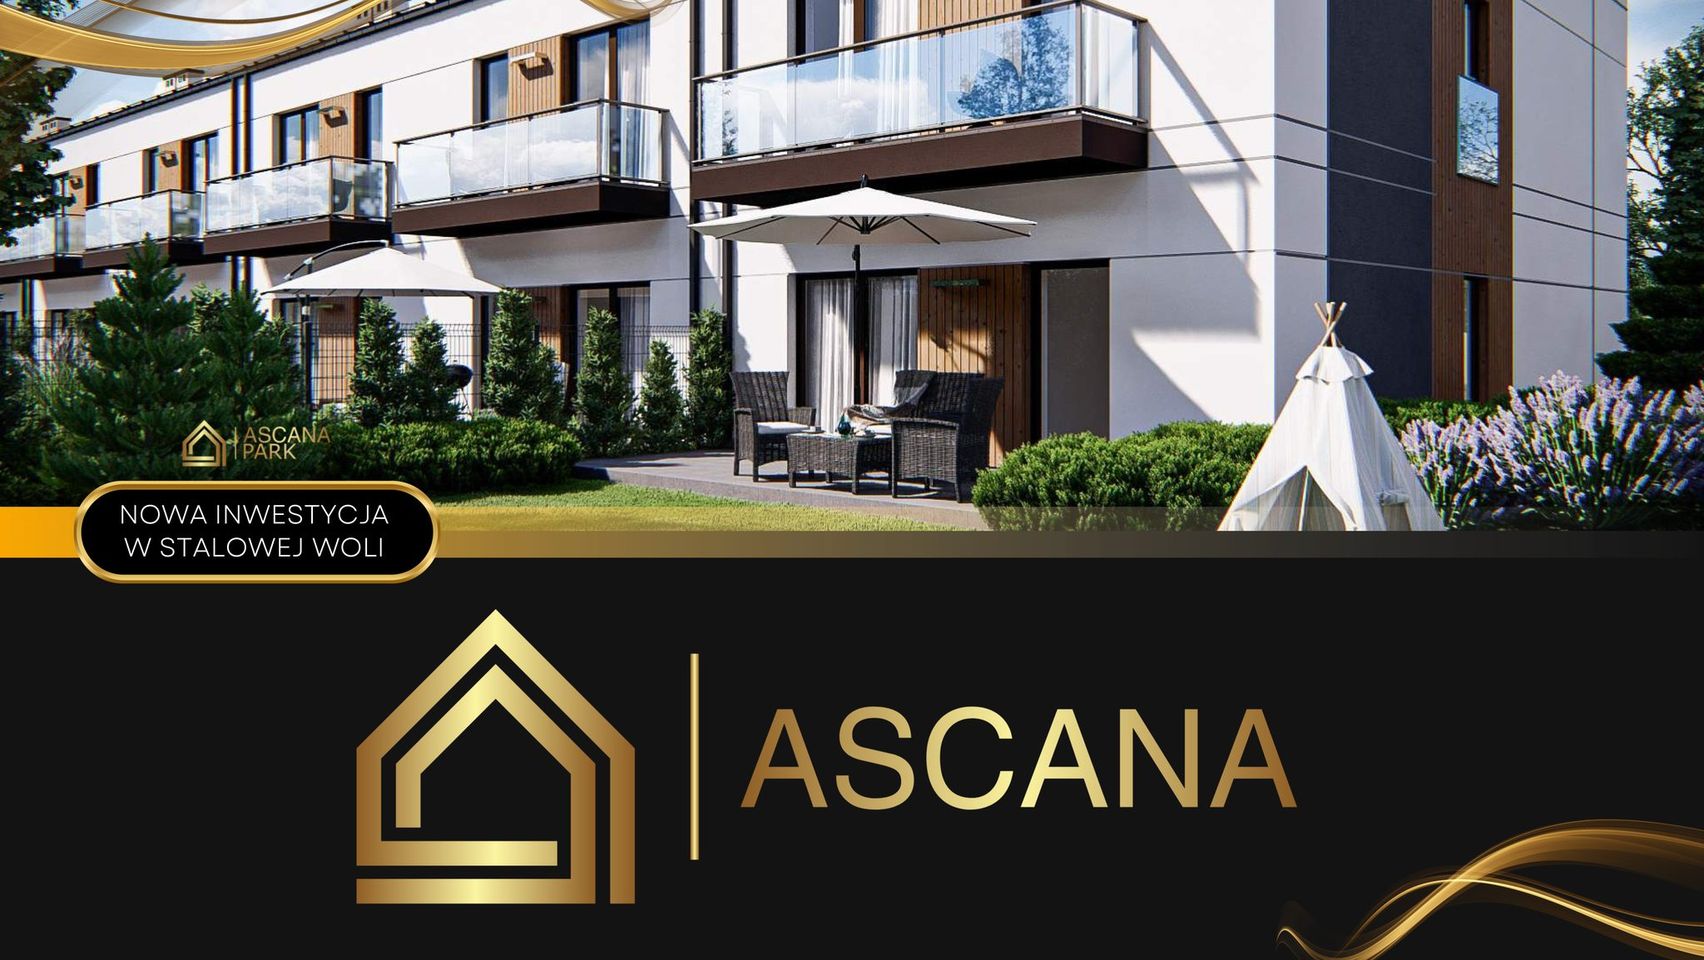 Apartament Ascanapark pow. 72m, 4 pokoje, 2 balkony SPRZEDANY